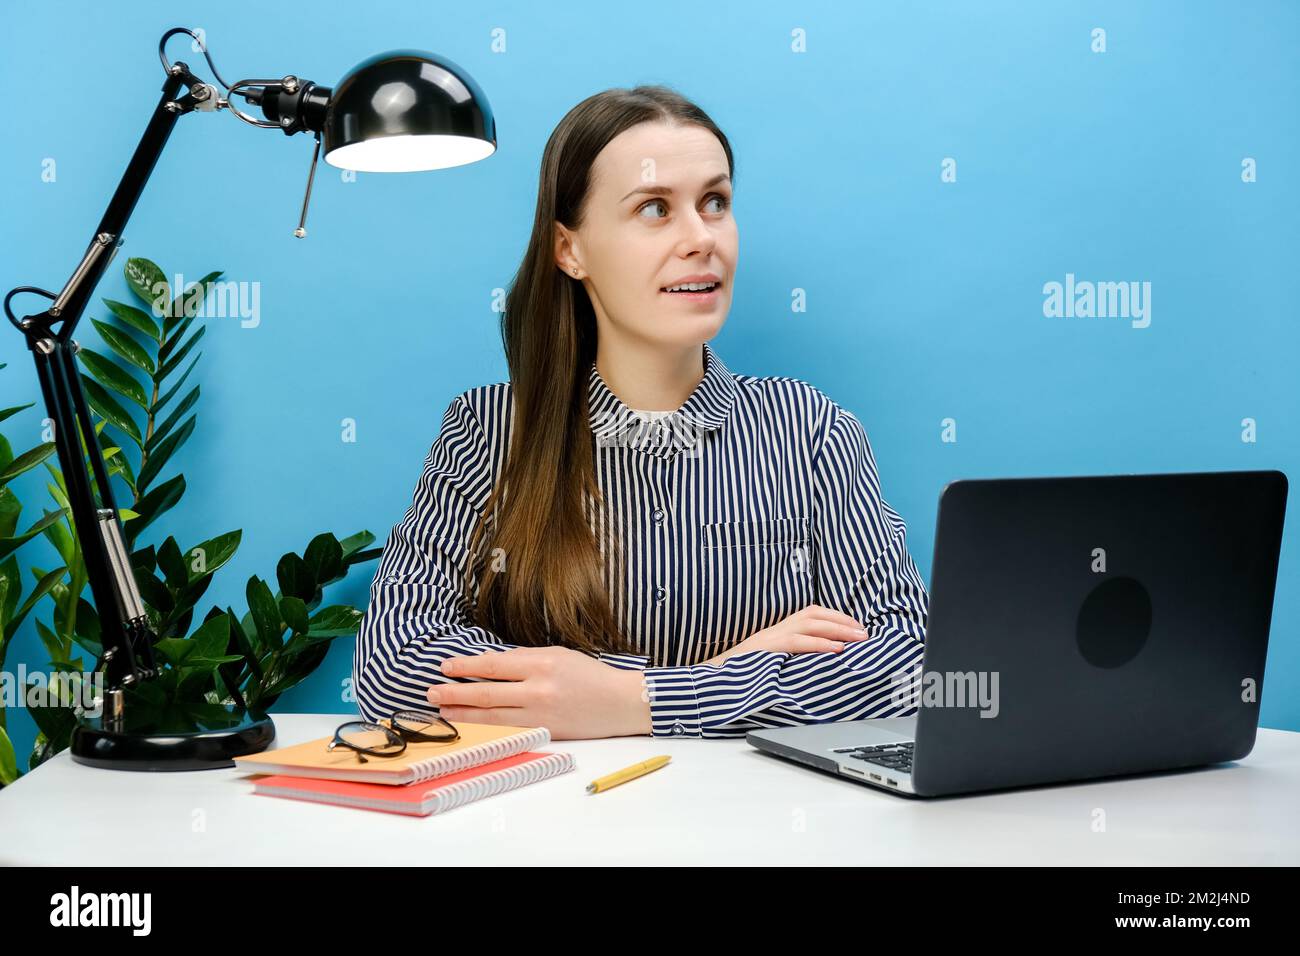 Porträt einer geistesbewussten, nachdenklichen Geschäftsfrau mit 20s-cm-Hemd, die auf einem weißen Büroschreibtisch mit pc-Laptop sitzt und isoliert über einem einfarbigen blauen Hintergrund posiert Stockfoto